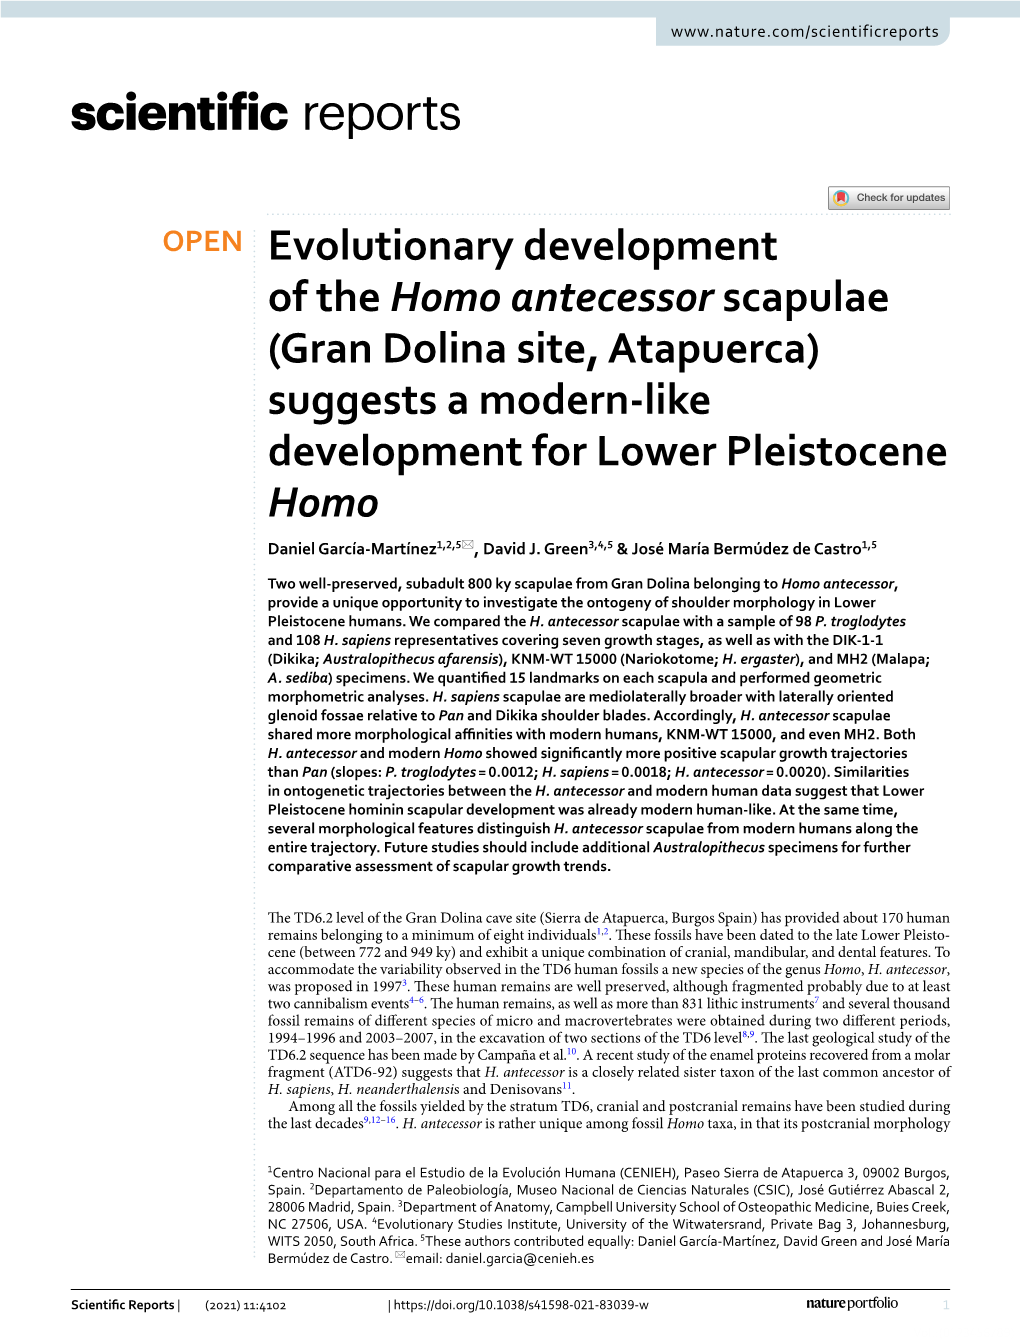 Evolutionary Development of the Homo Antecessor